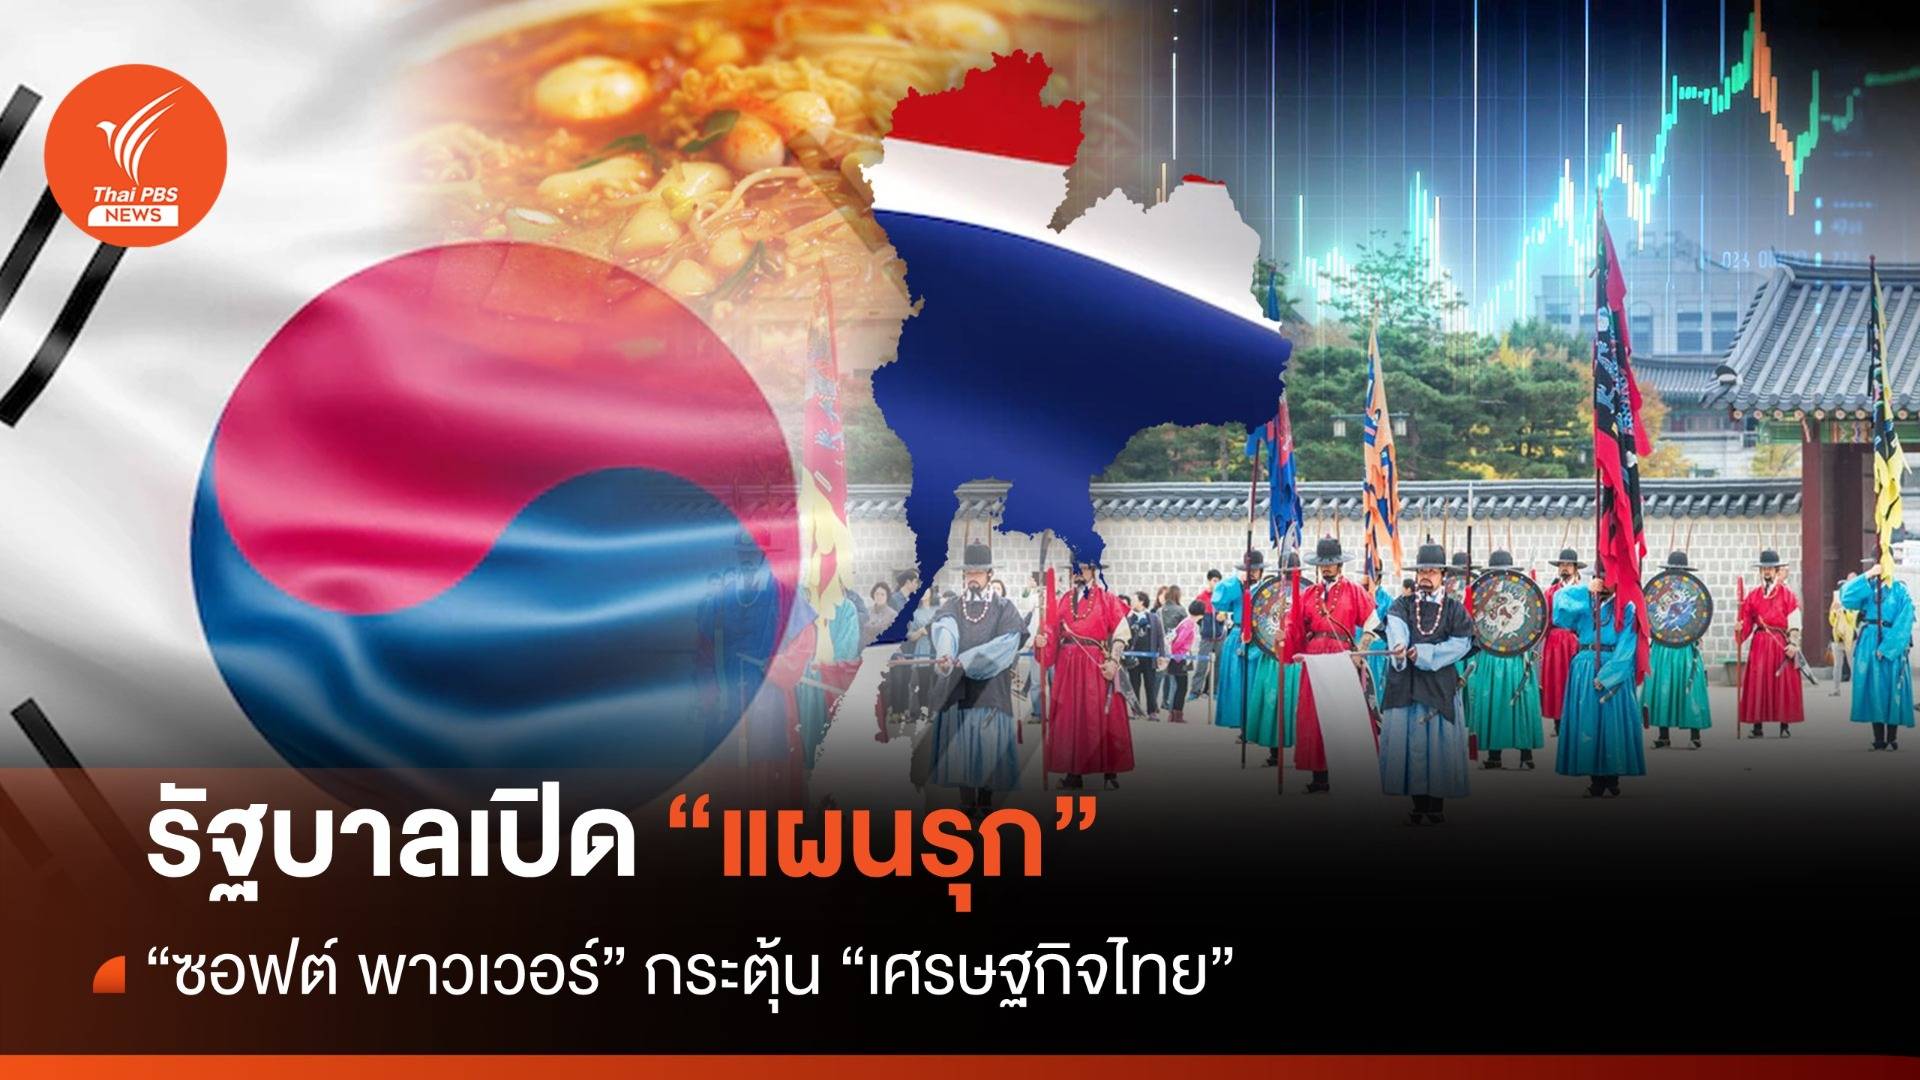 เปิดแผนรุก "ซอฟต์ พาวเวอร์" กระตุ้น "เศรษฐกิจไทย"